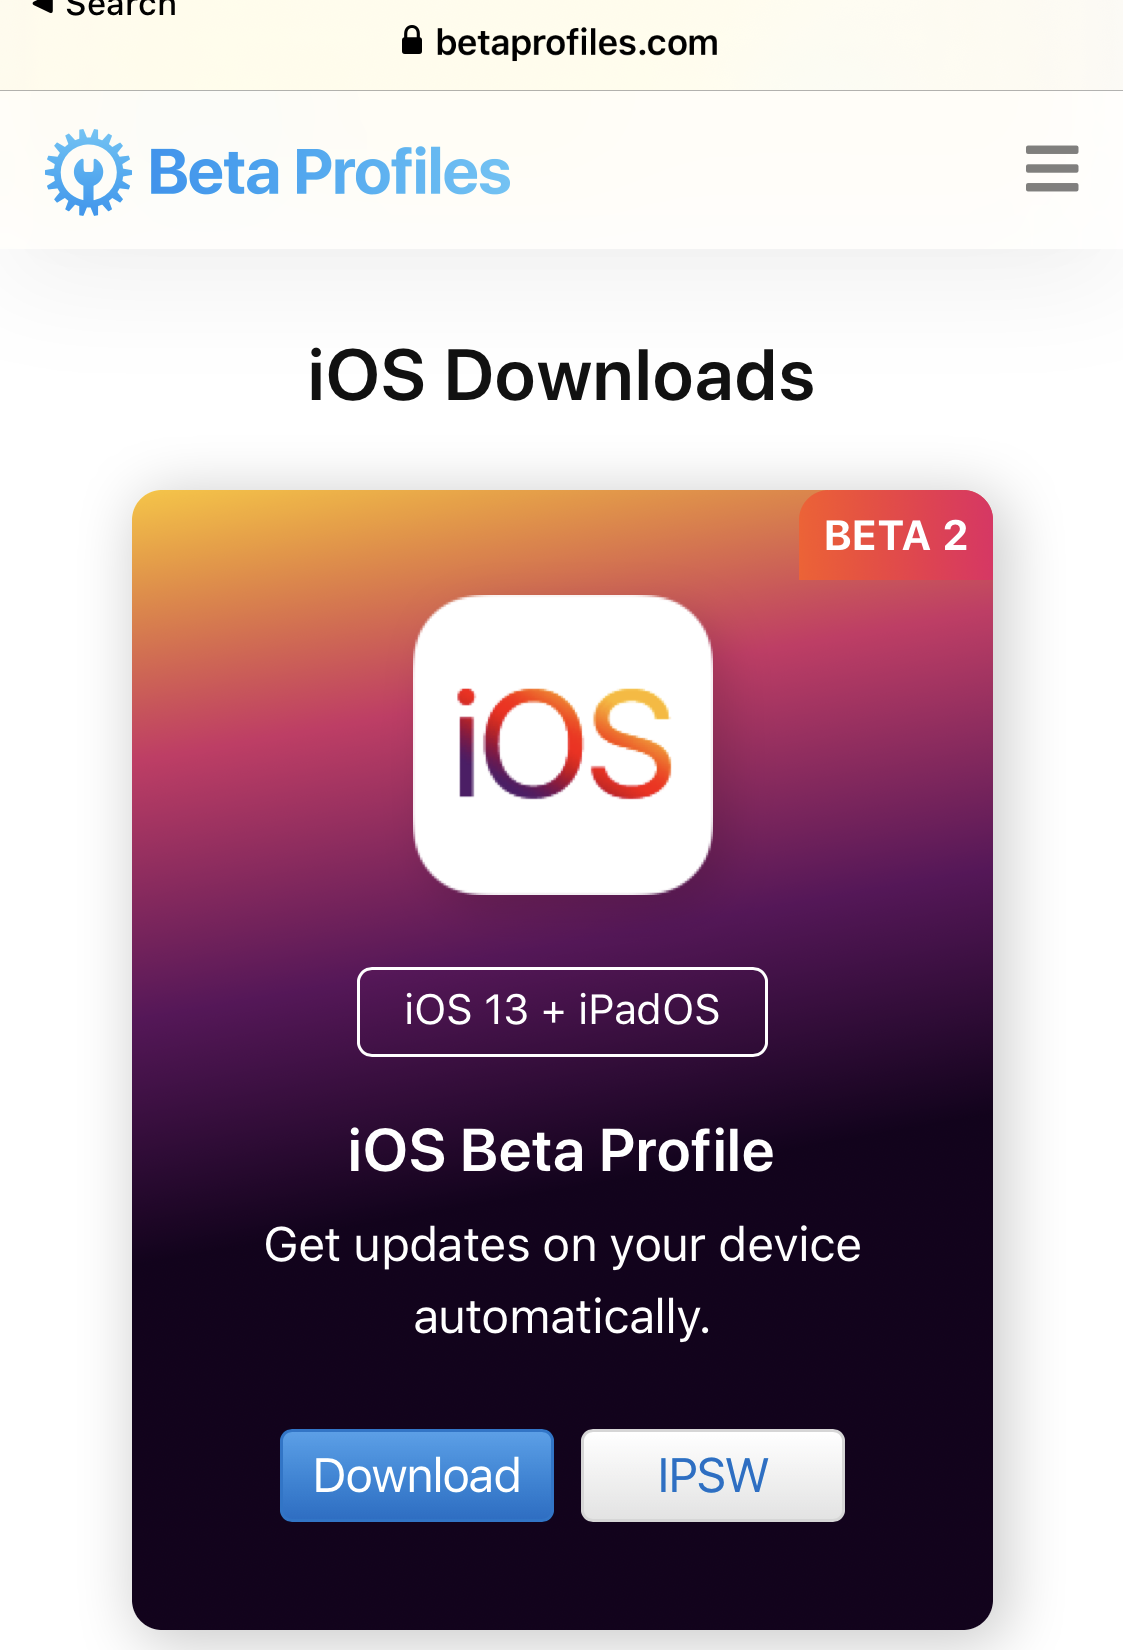 ios 13 developer beta profile download